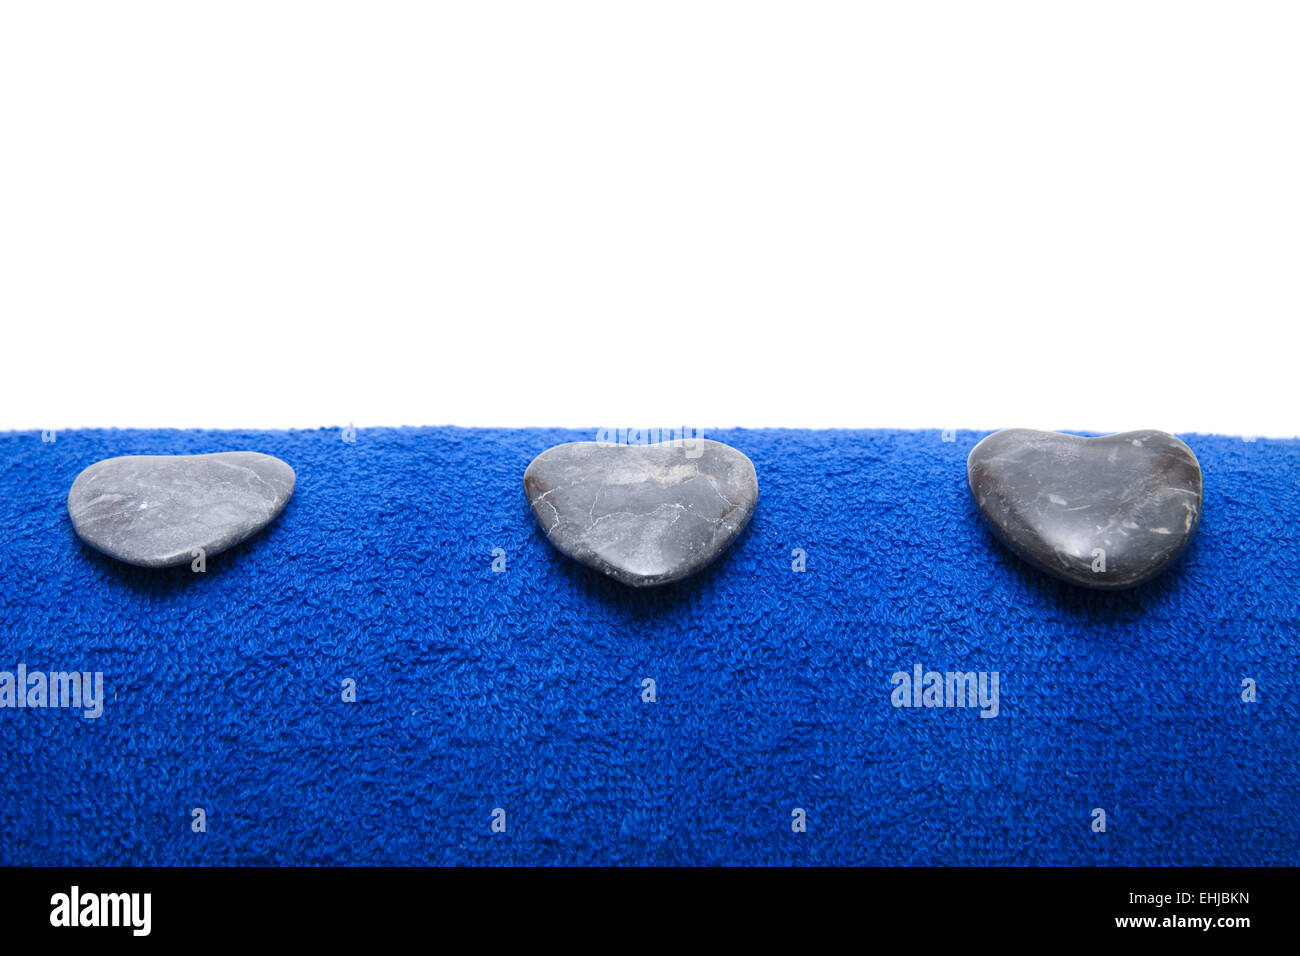 Coeur des pierres sur une serviette bleu Banque D'Images